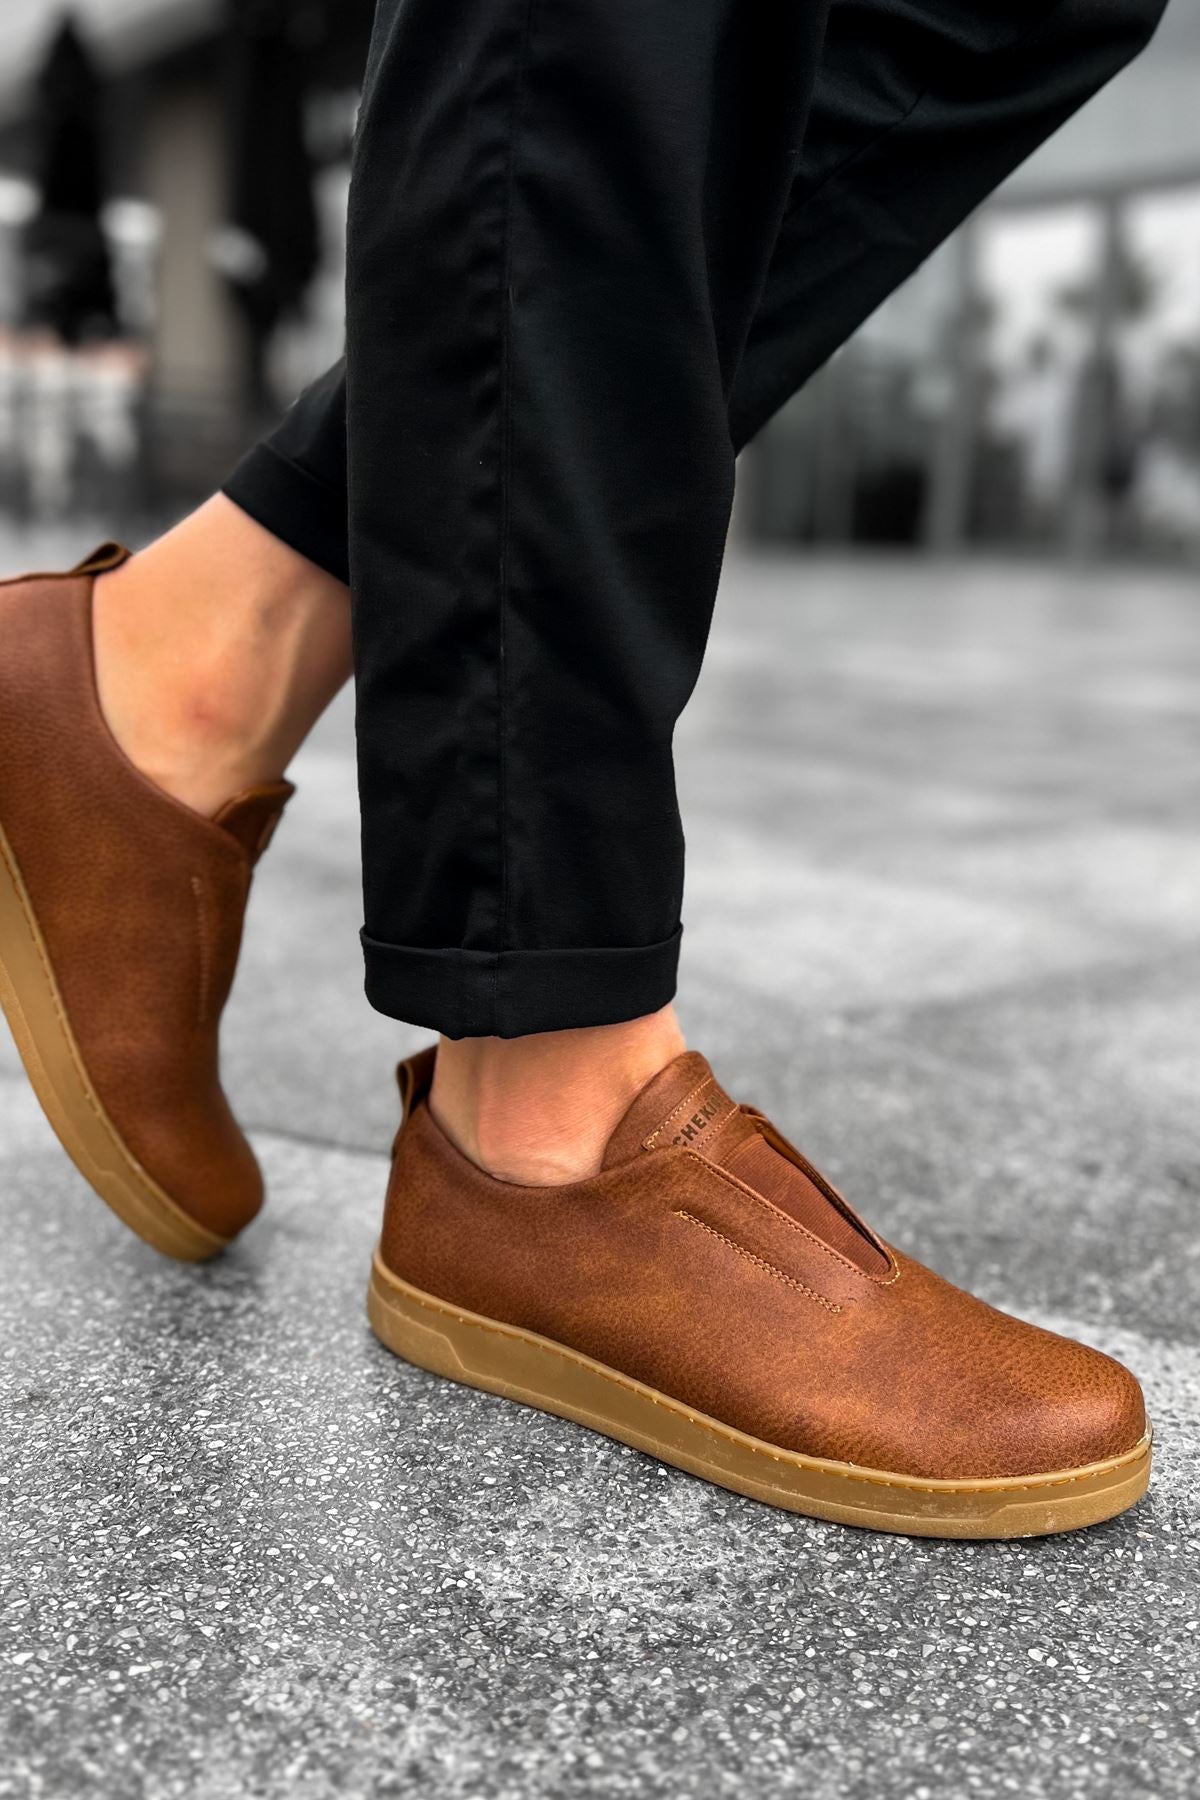 CH195 İpekyol KT Men's Shoes Sneakers Brown - STREETMODE ™